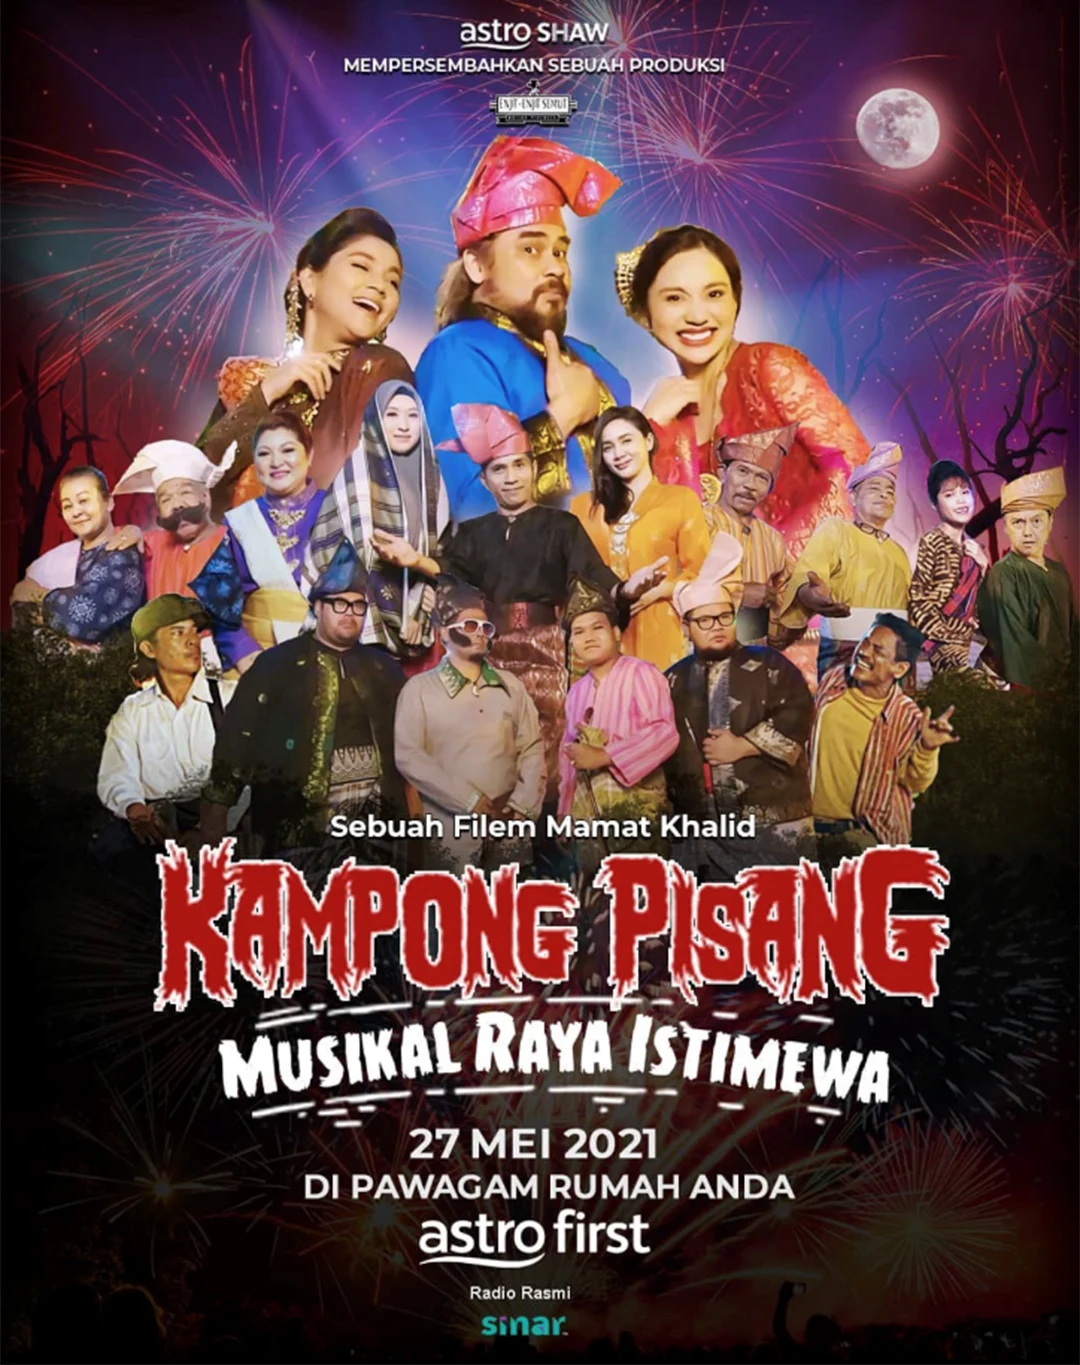 Filem Kampong Pisang Musikal Raya Istimewa Astro First